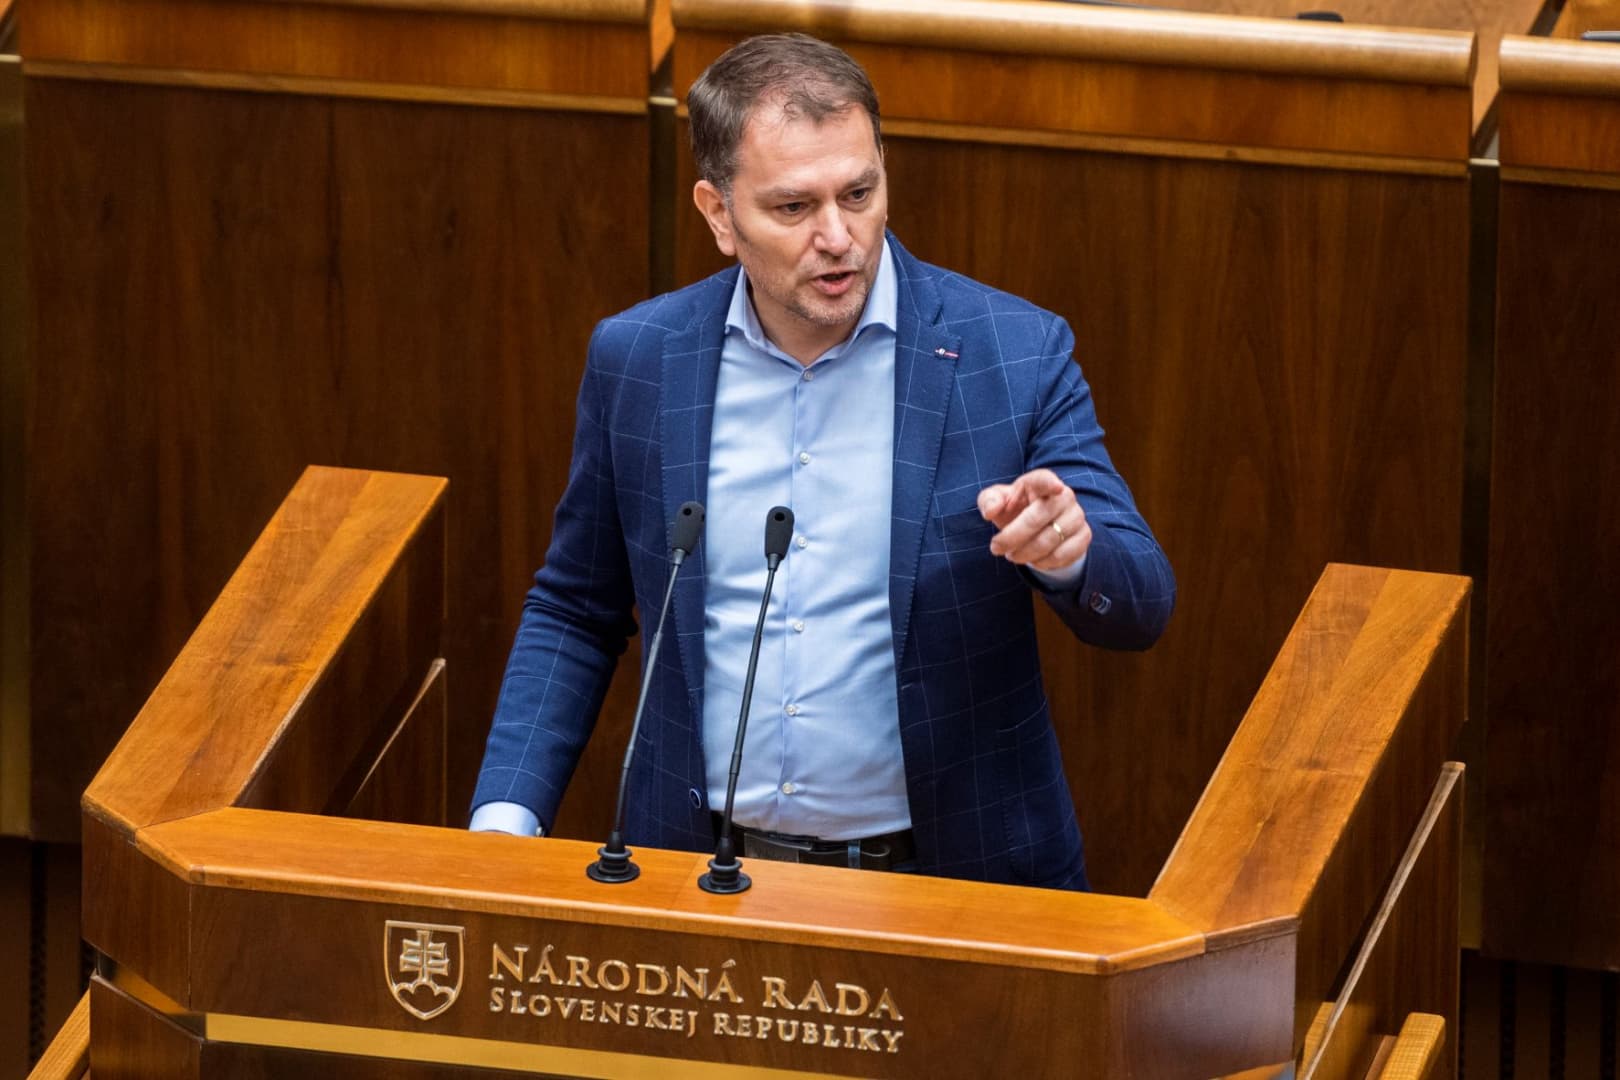 Matovič a vendéglőknek és Kollárnak áfacsökkentést, az önkormányzatoknak 300 millió eurót adna, csak legyen költségvetés